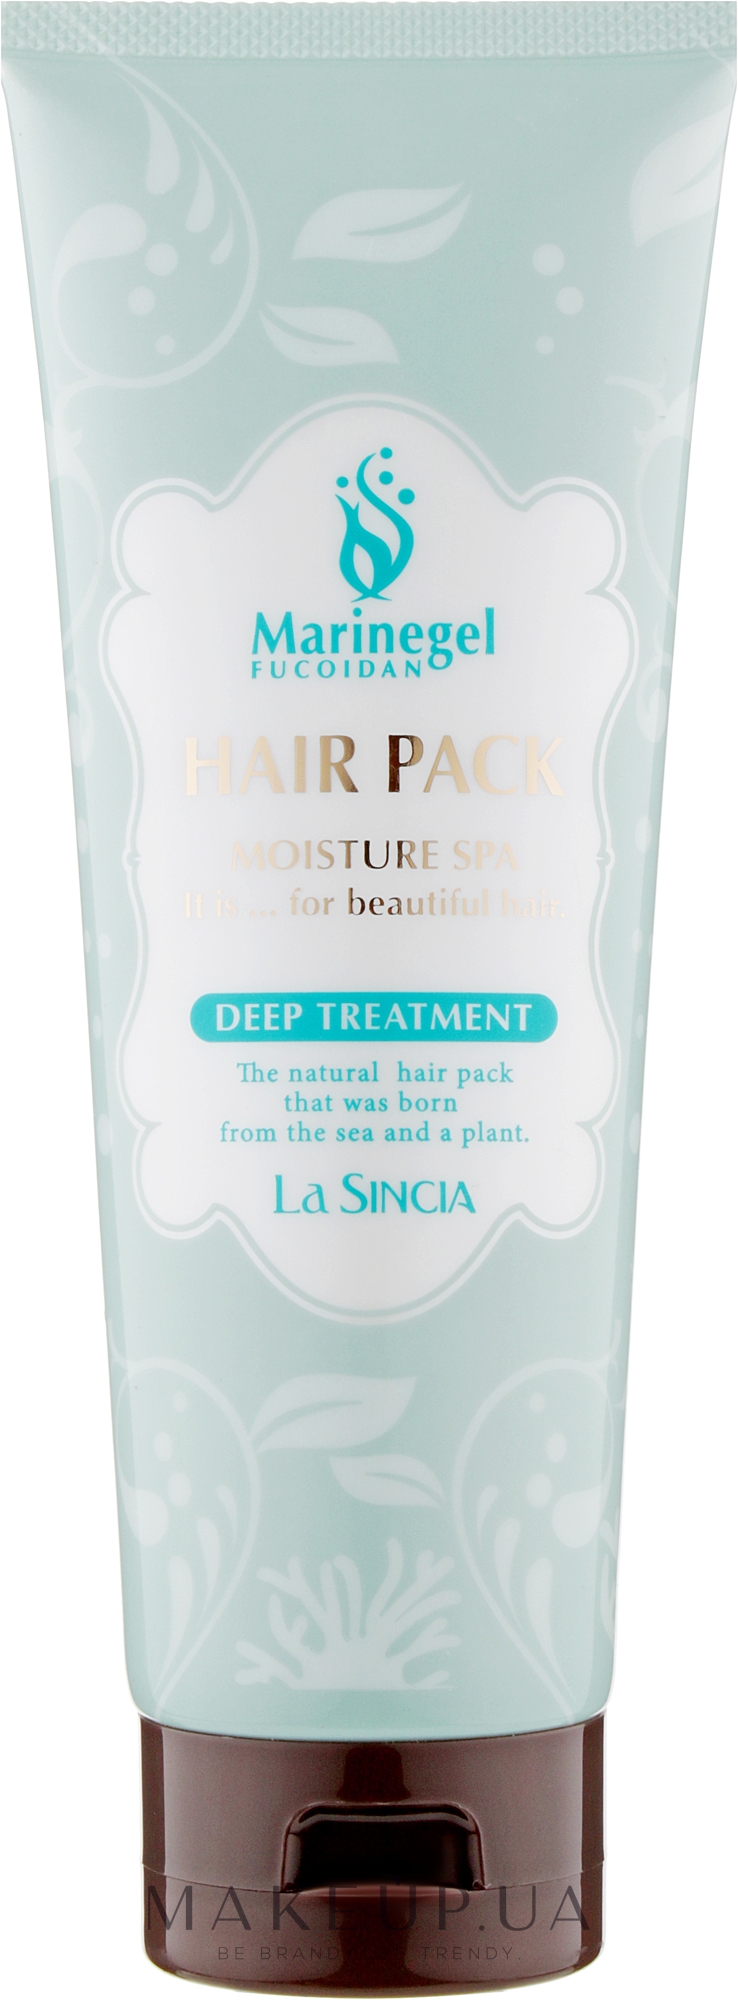 Інтенсивна глибоко відновлювальна антивікова маска для волосся - La Sincere Hair Pack Deep Treatment — фото 250g